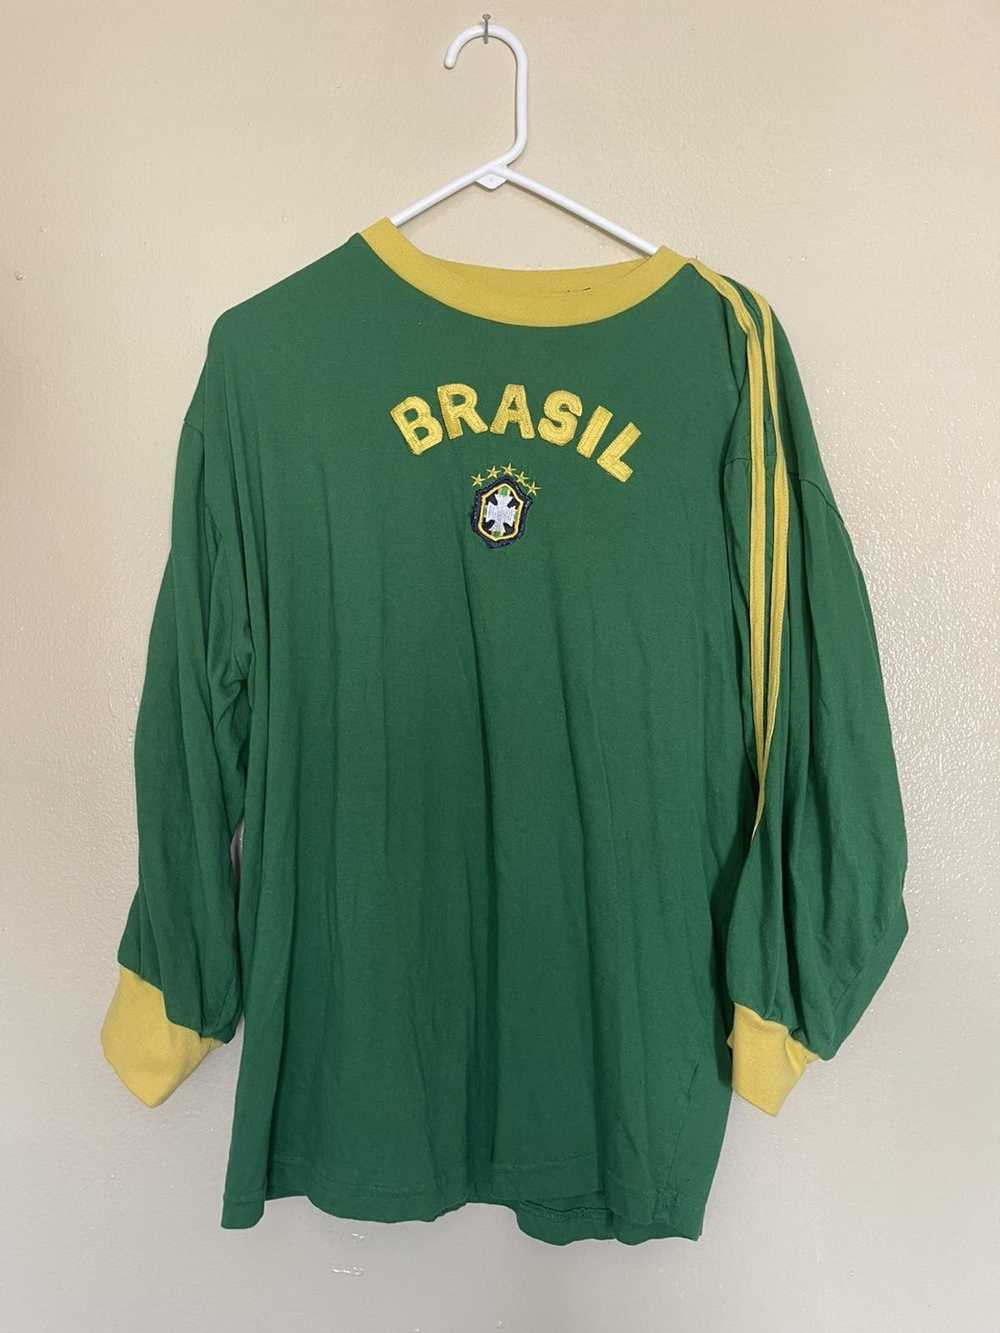 Vintage Brazil - image 1